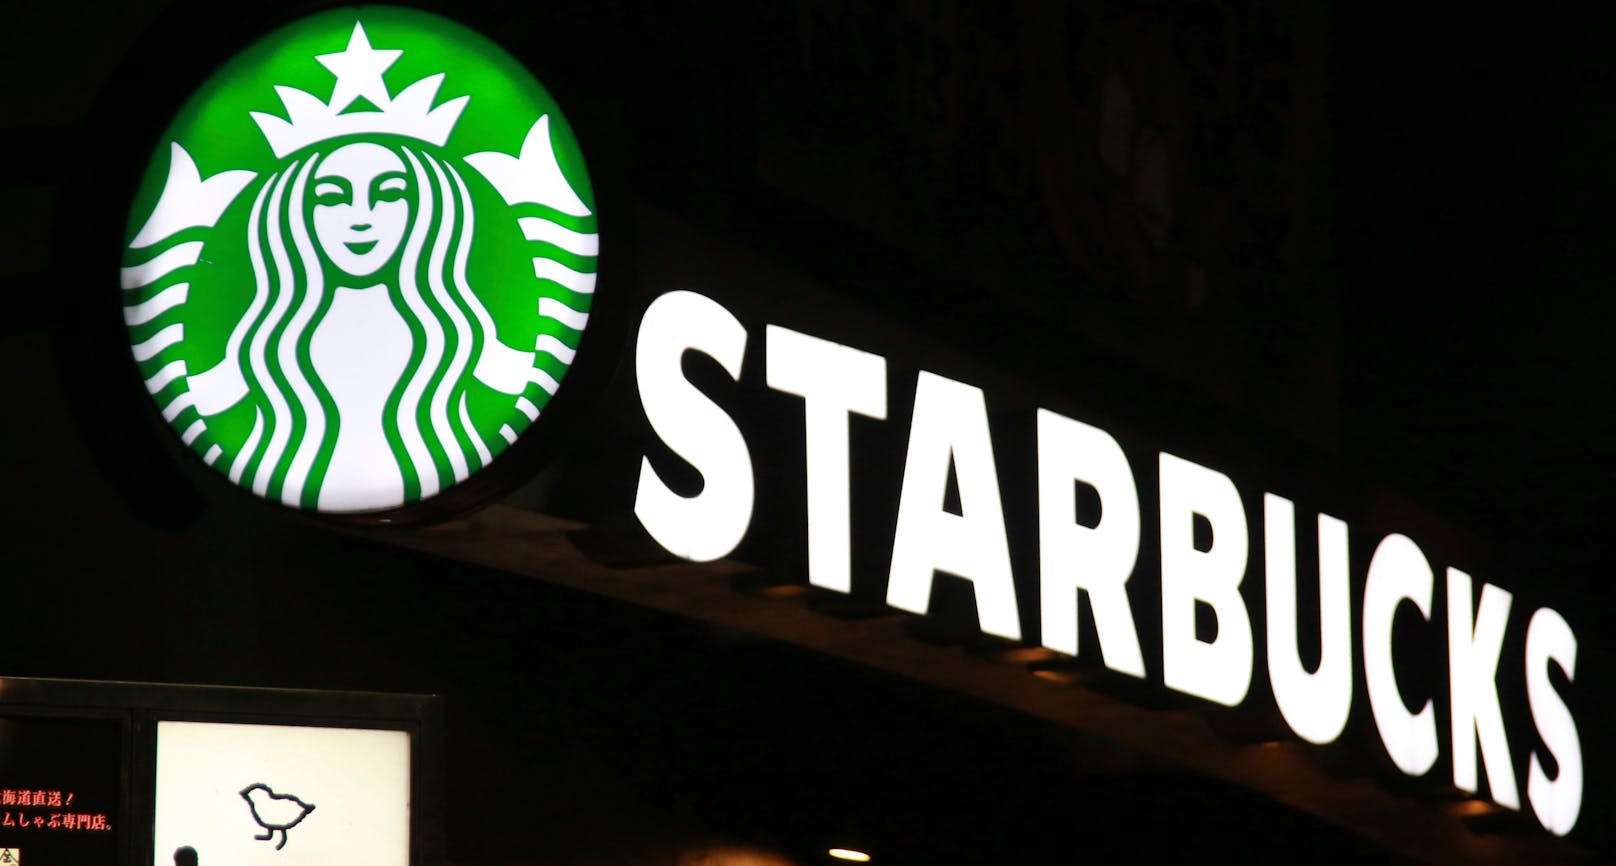 In dem Prozess gegen Starbucks wird ein Schadenersatz von mindestens fünf Millionen Dollar (4,69 Millionen Euro) gefordert.